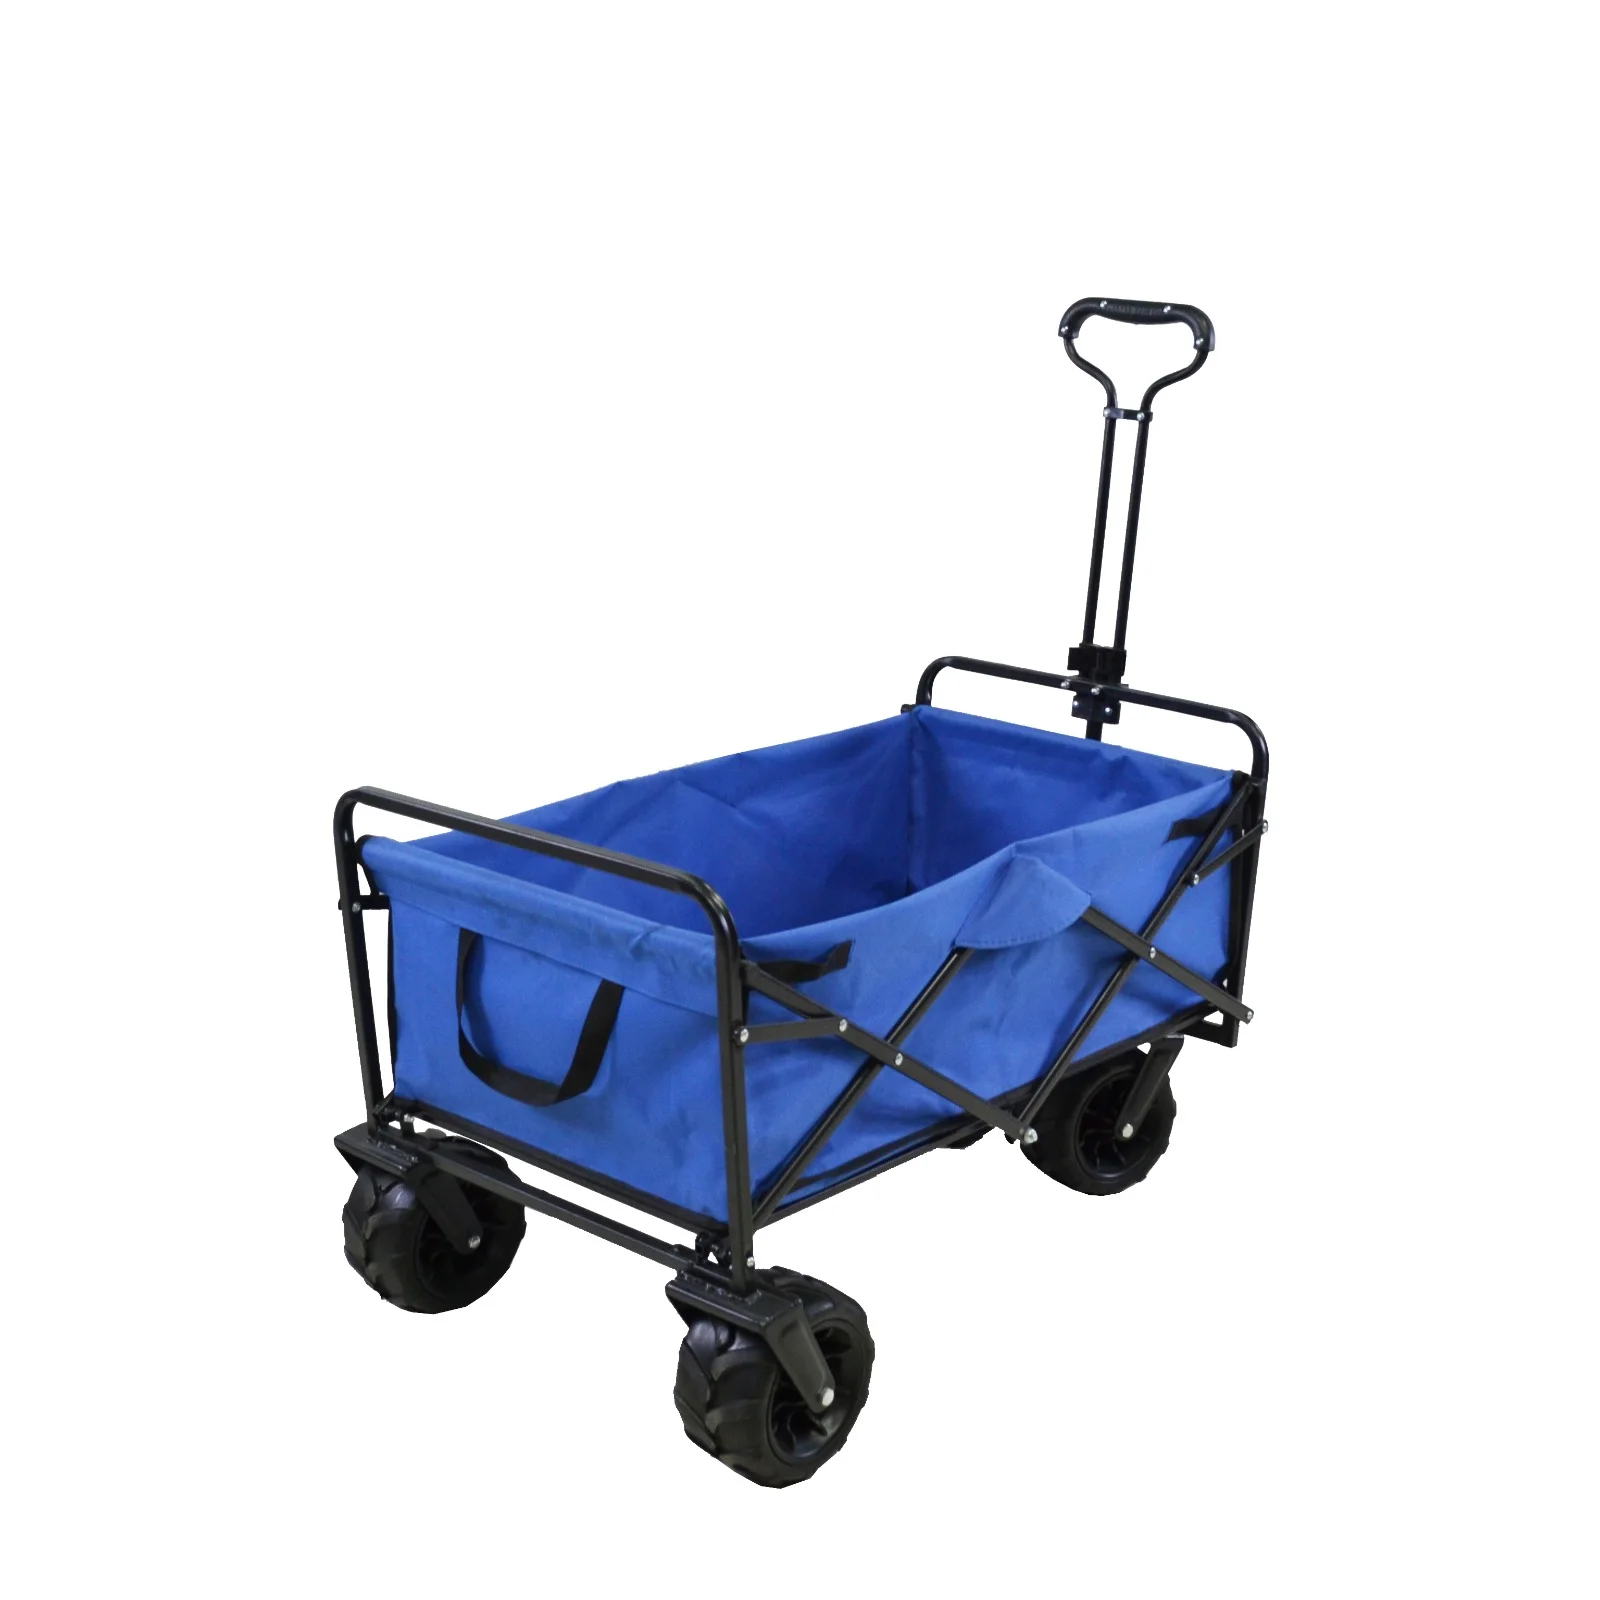 Fém kézikocsi, összecsukható kerti kocsi ponyvával, kék, max. 70kg teherbírás (A04)